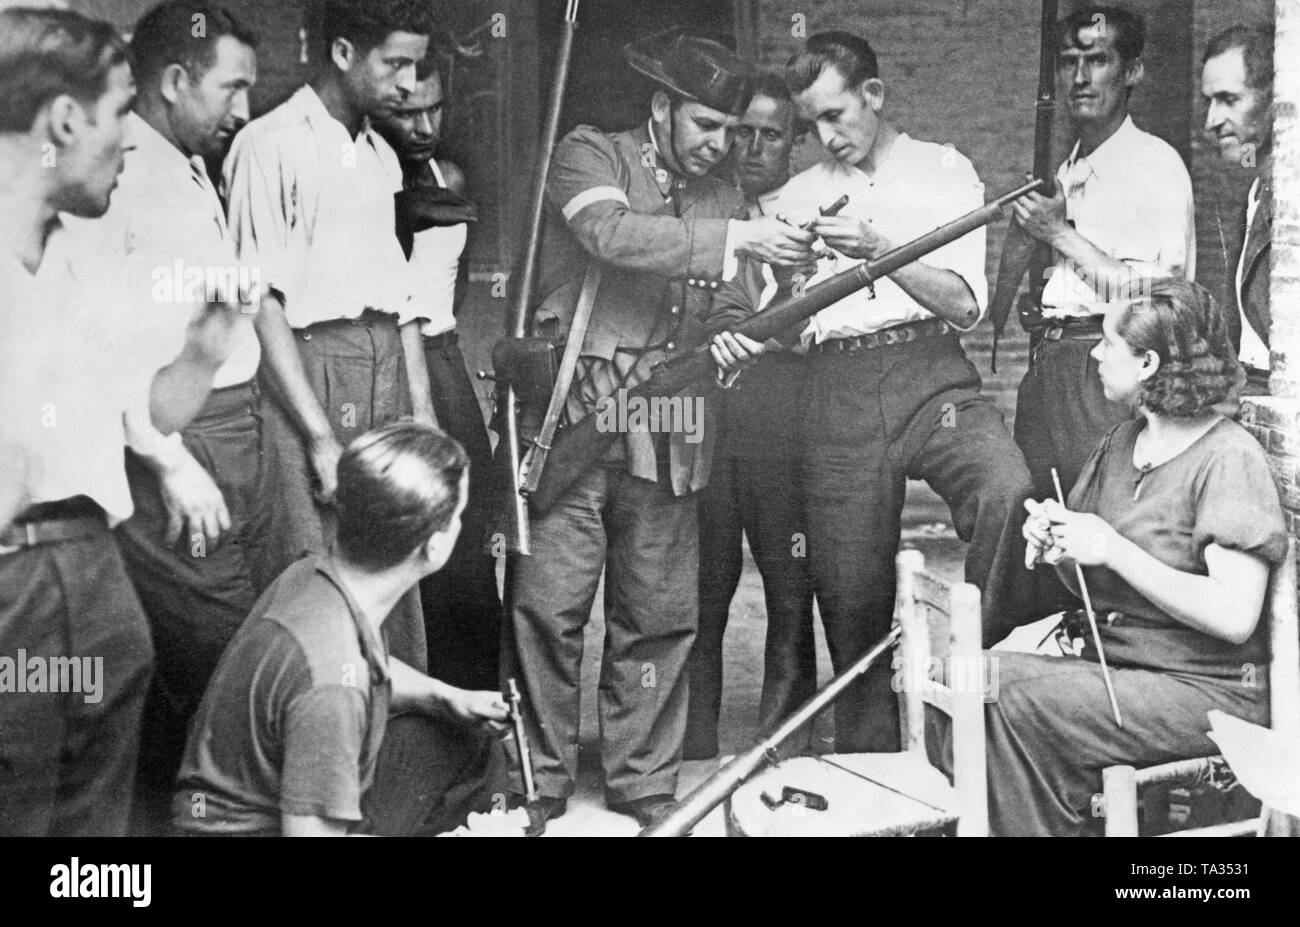 Un membre (au centre) de la Guardia Civil (une unité de police paramilitaire, qui rejoint presque entièrement les troupes de Franco en 1936, forme des milices de la défense civile et d'une femme sur la manipulation d'une carabine. Le policier montre le milicien le verrou retiré de l'arme. Banque D'Images